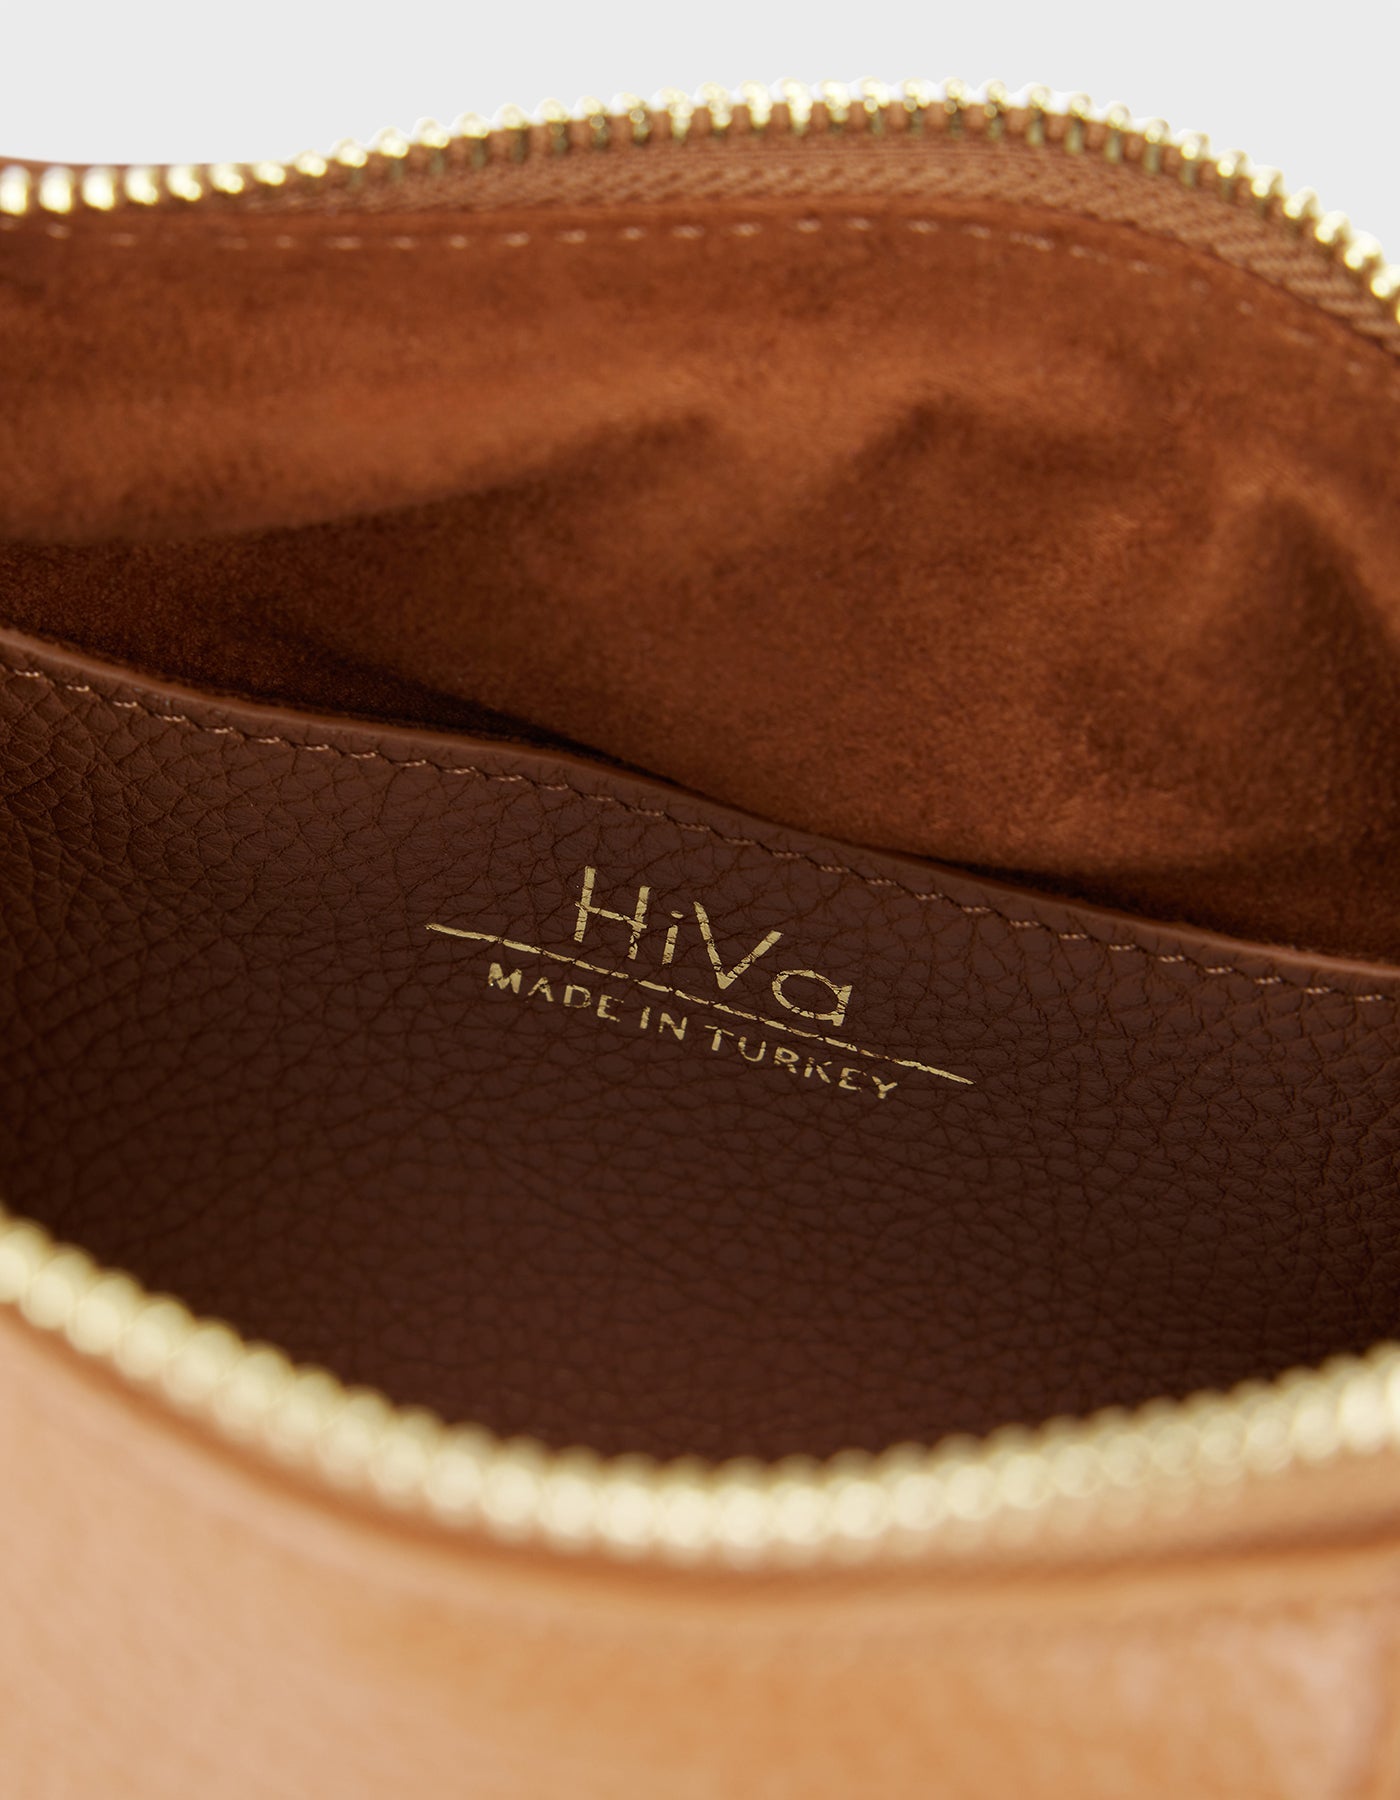 HiVa Atelier - Midi Croissant Bag Wood